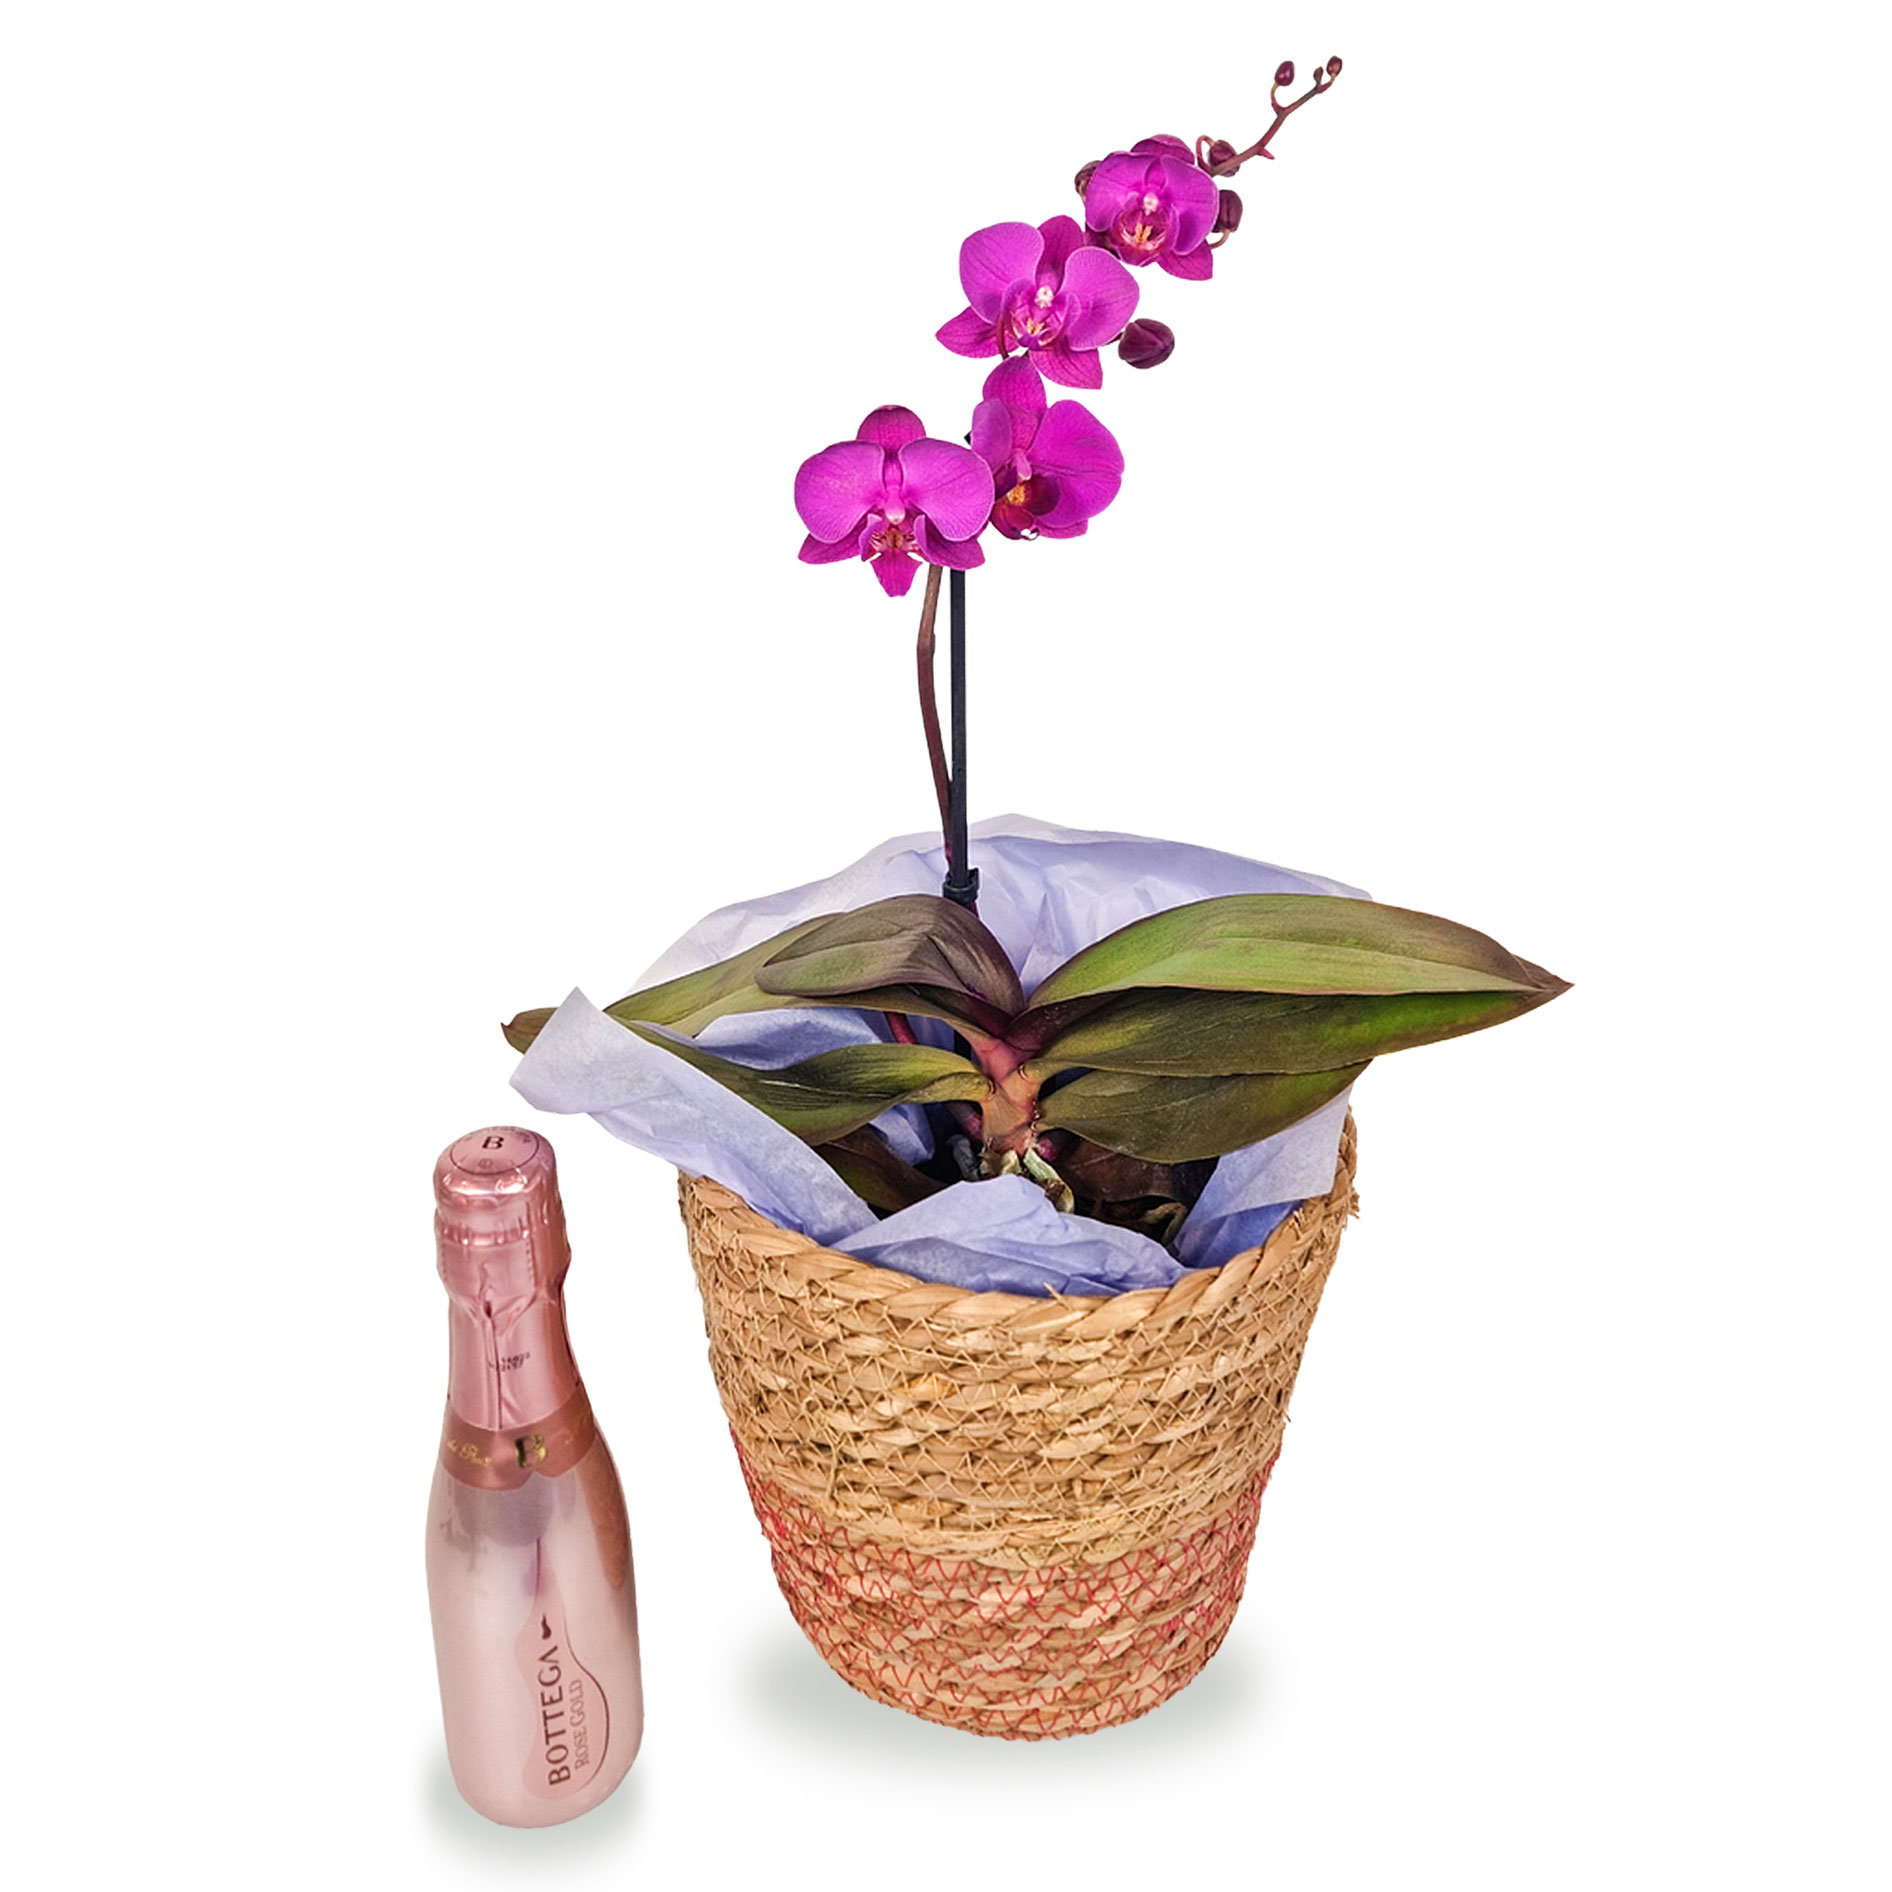 Purple Orchid & Mini Prosecco Gift Set - Free Delivery!